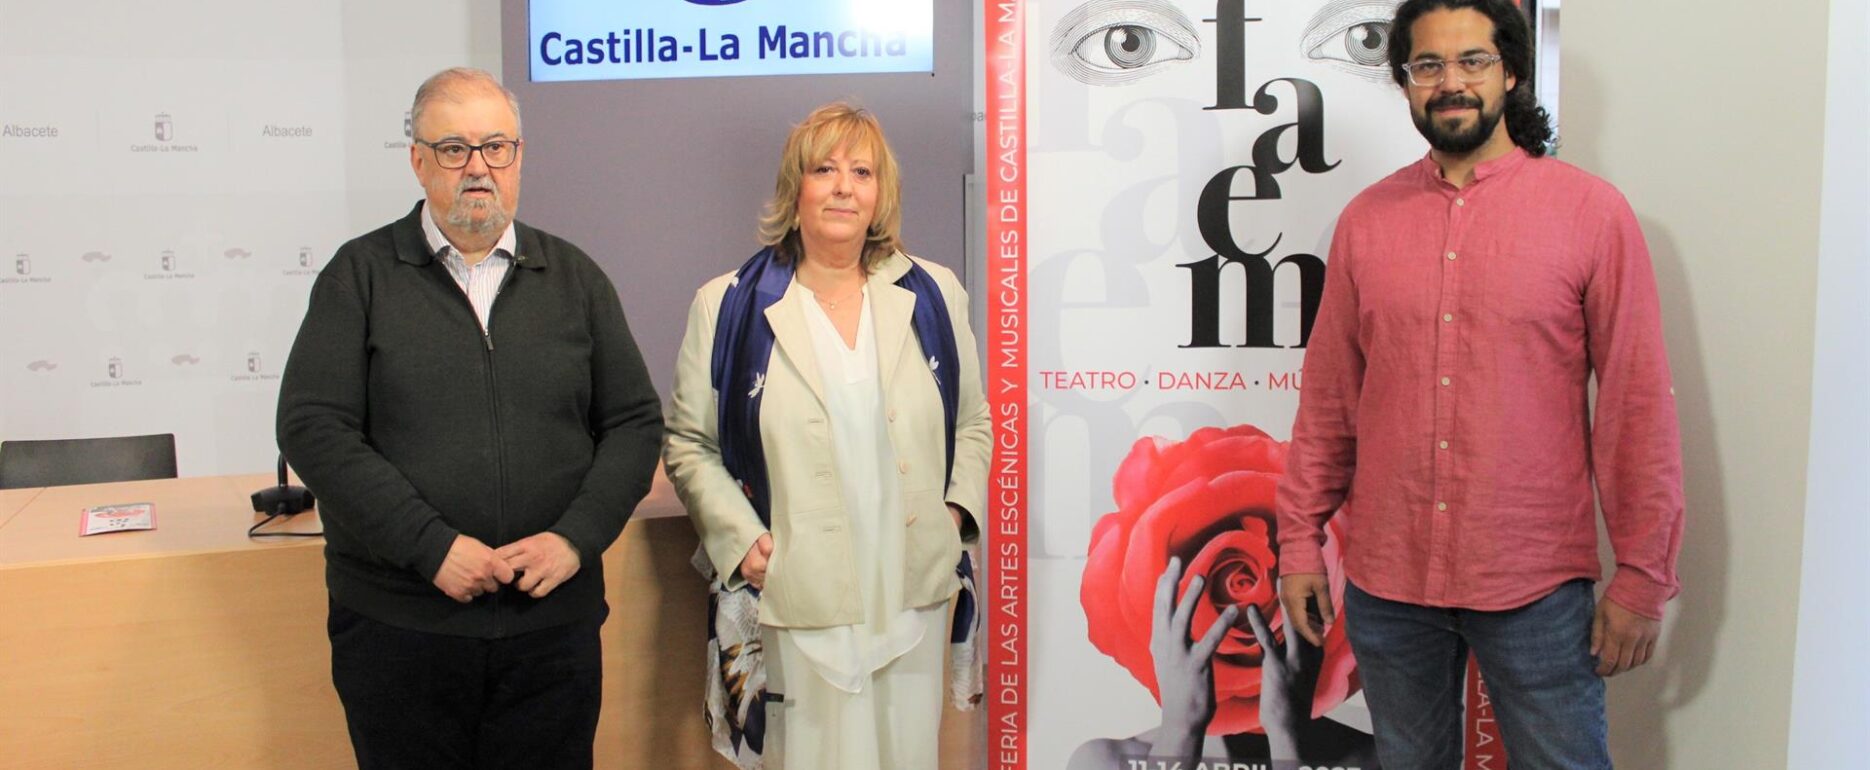 Presentación del XXVII Festival de Artes Escénicas y Musicales de CLM en la Casa Perona, en Albacete.